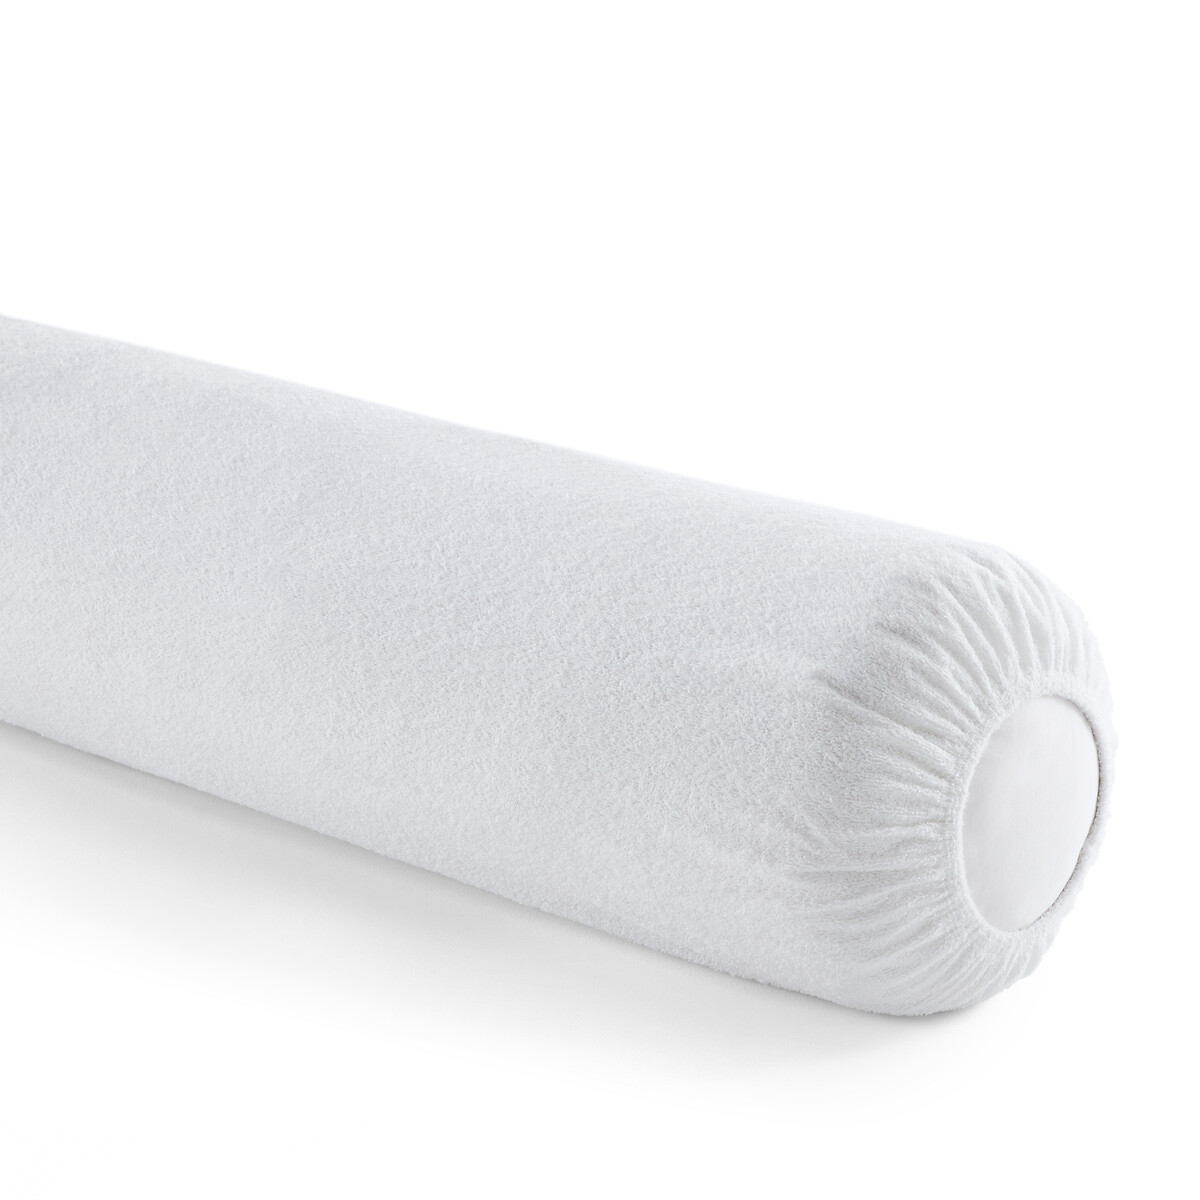 Чехол защитный на подушку-валик с обработкой против клещей длина: 140 см белый защитный чехол на подушку из мольтона с обработкой teflon 40 x 60 см белый